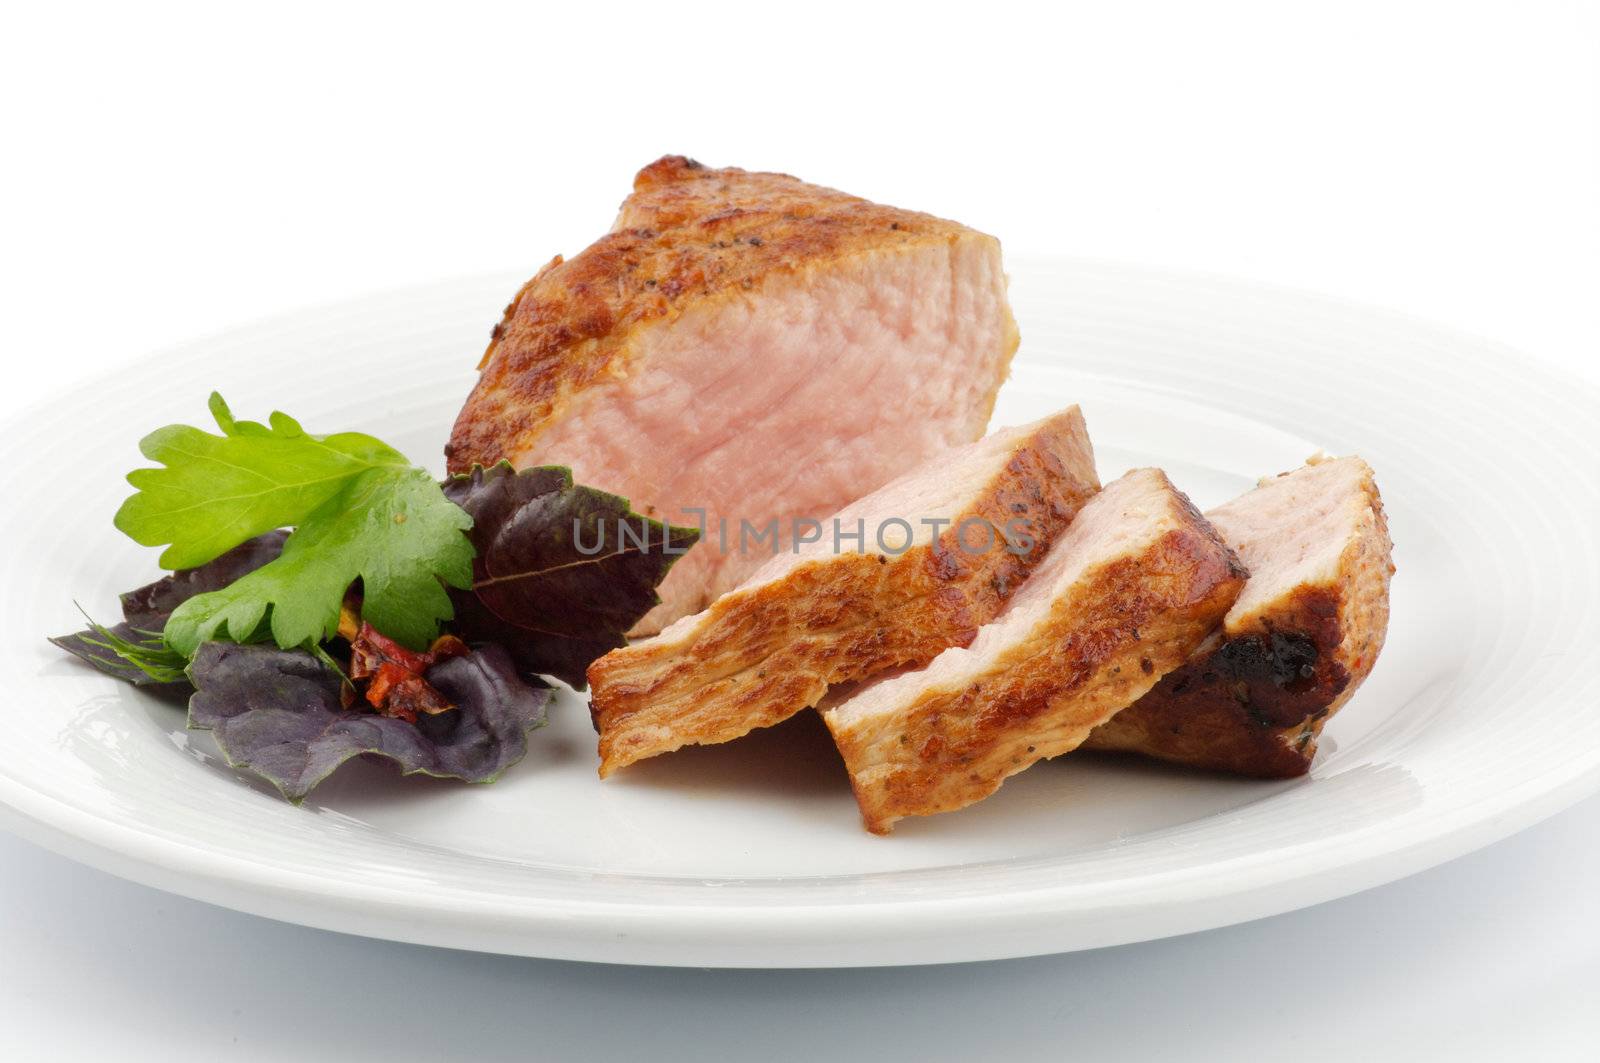 Spicy roast pork by zhekos